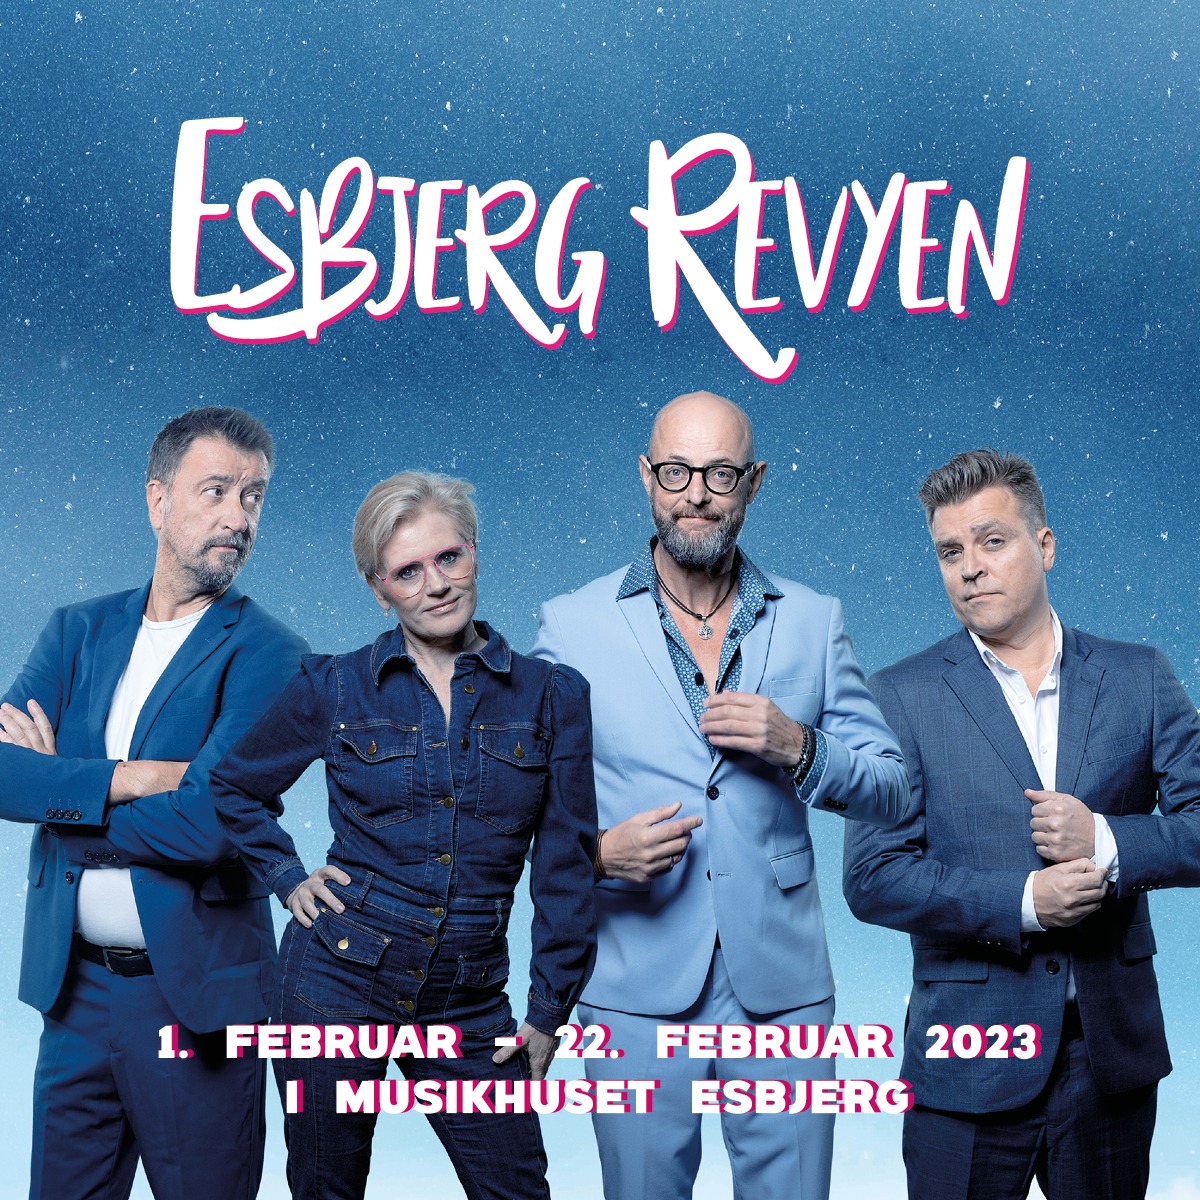 Anmeldelse: Esbjerg Revyen 2023, Musikhuset Esbjerg (Esbjerg Revyen)